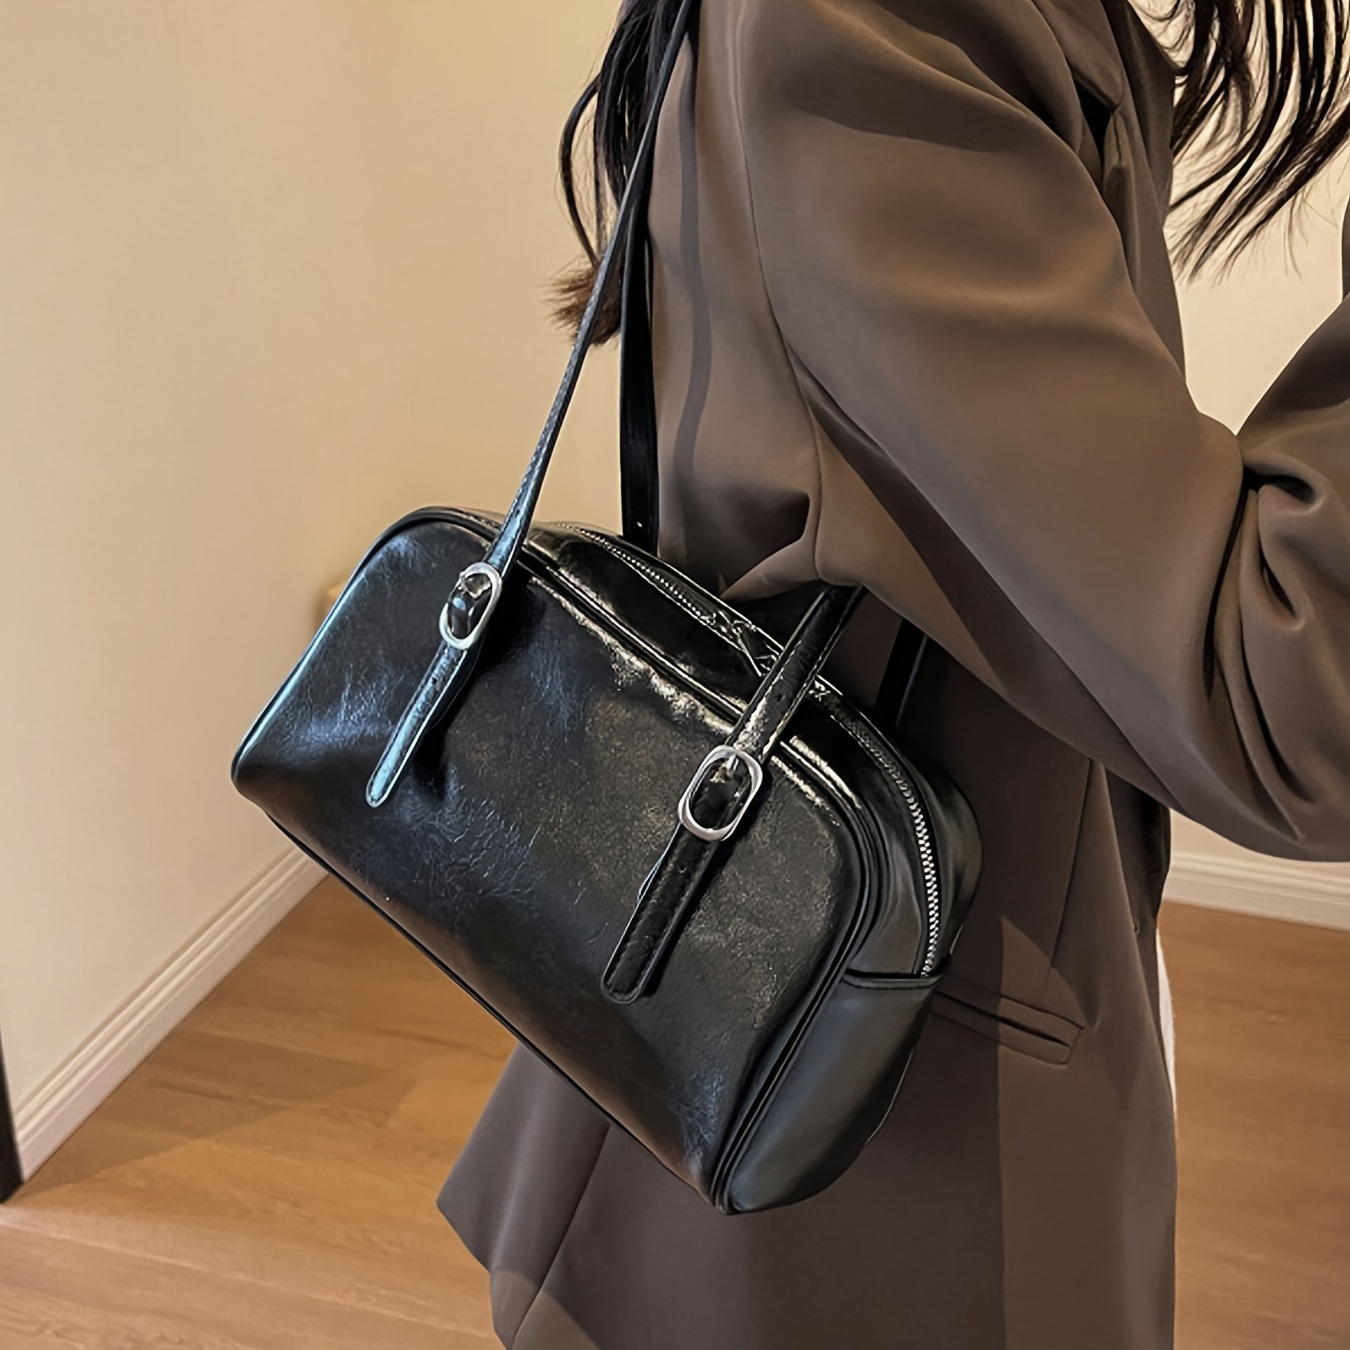 

Women's Chic Black Pu Leather Shoulder Bag, Vintage Elegant Handbag With Adjustable Straps For Daily Use